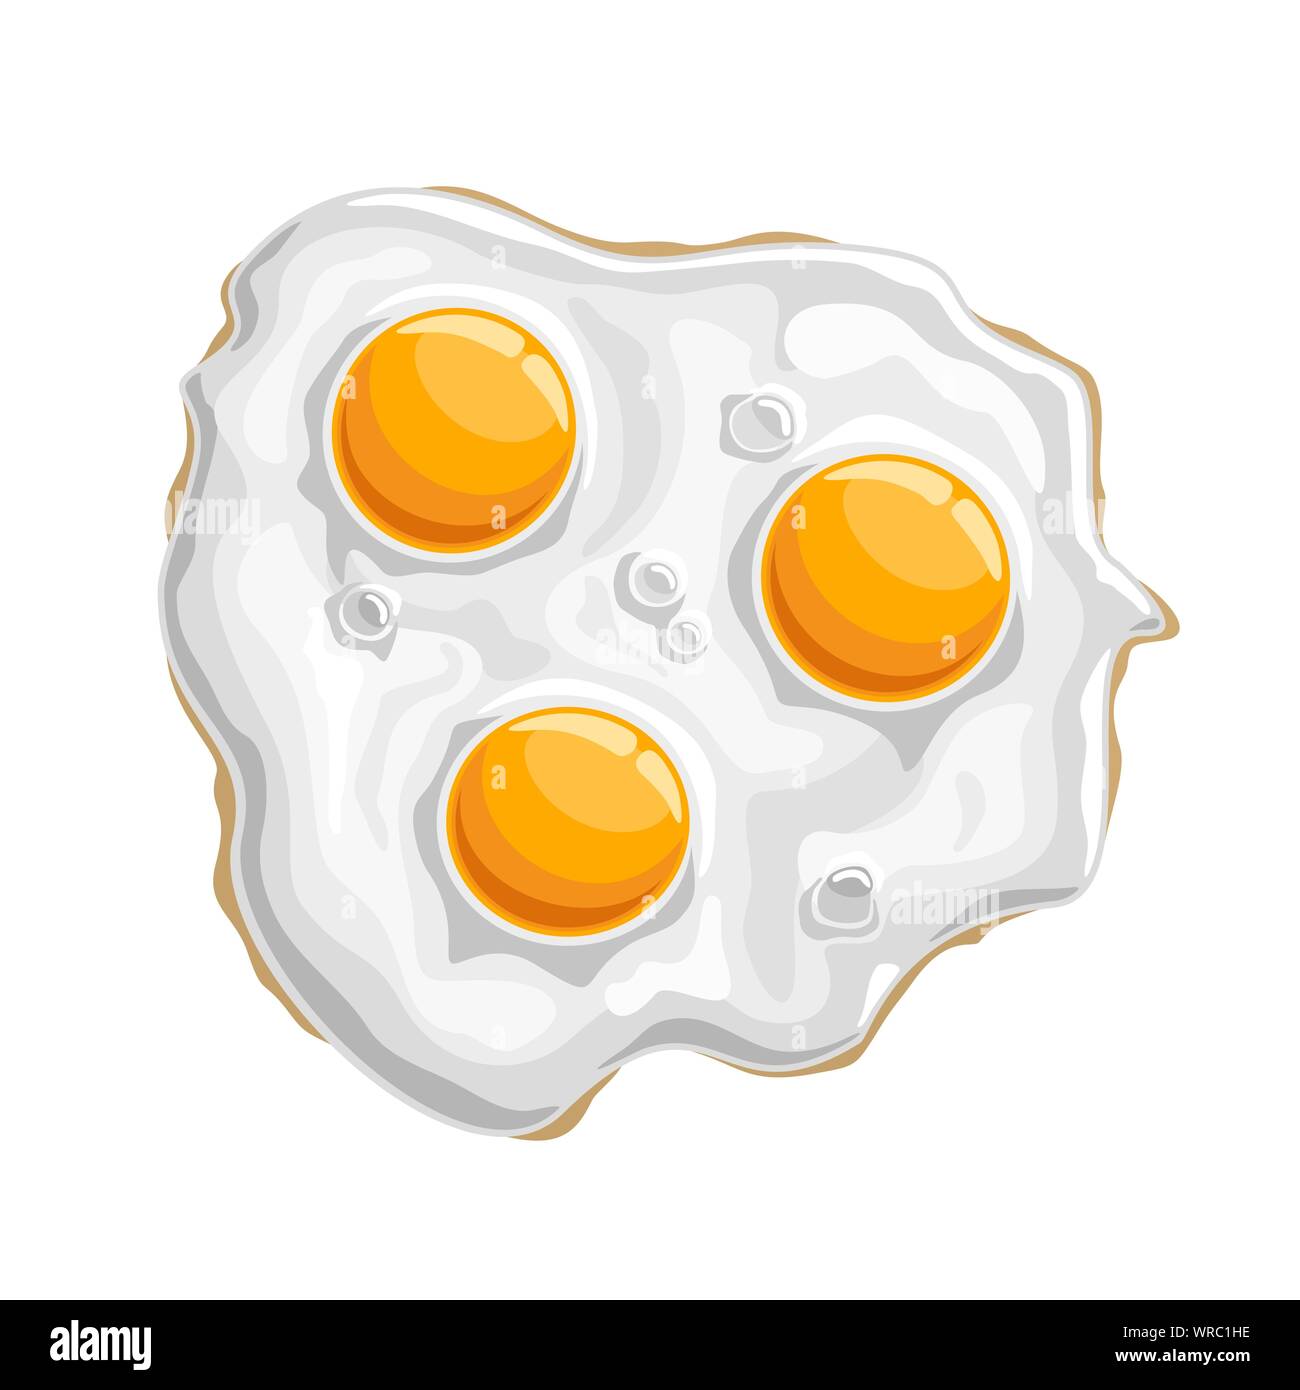 Ilustración vectorial de huevos de pollo frito brillante: aislado de proteína blanco cocido con 3 amarillo yema de huevo, crujiente tradicional fry desayuno. Ilustración del Vector